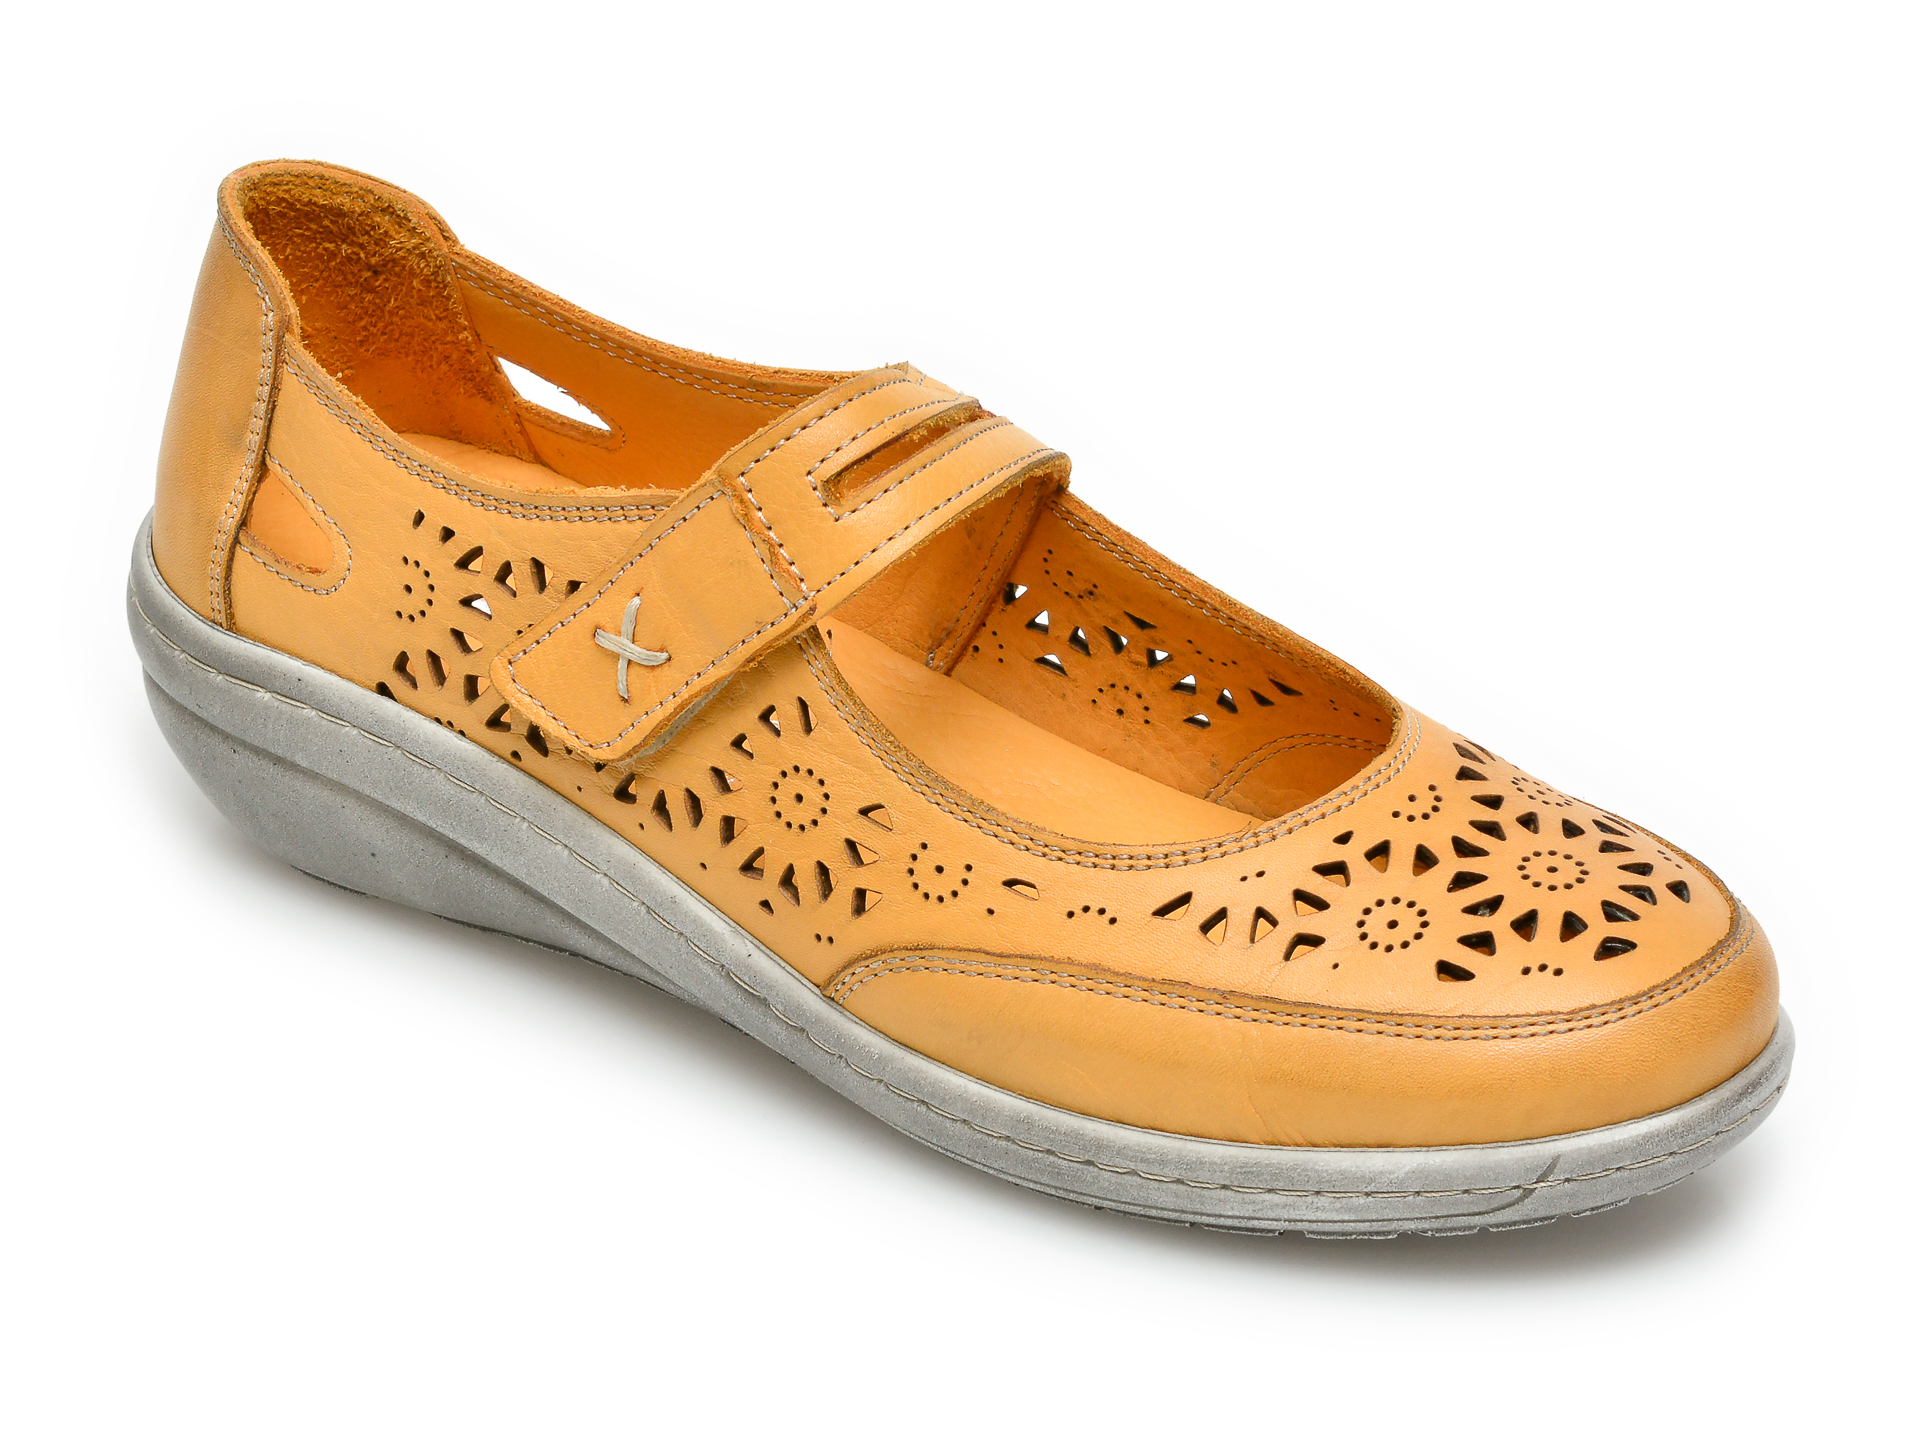 Pantofi PASS COLLECTION galbeni, 62050, din piele naturala